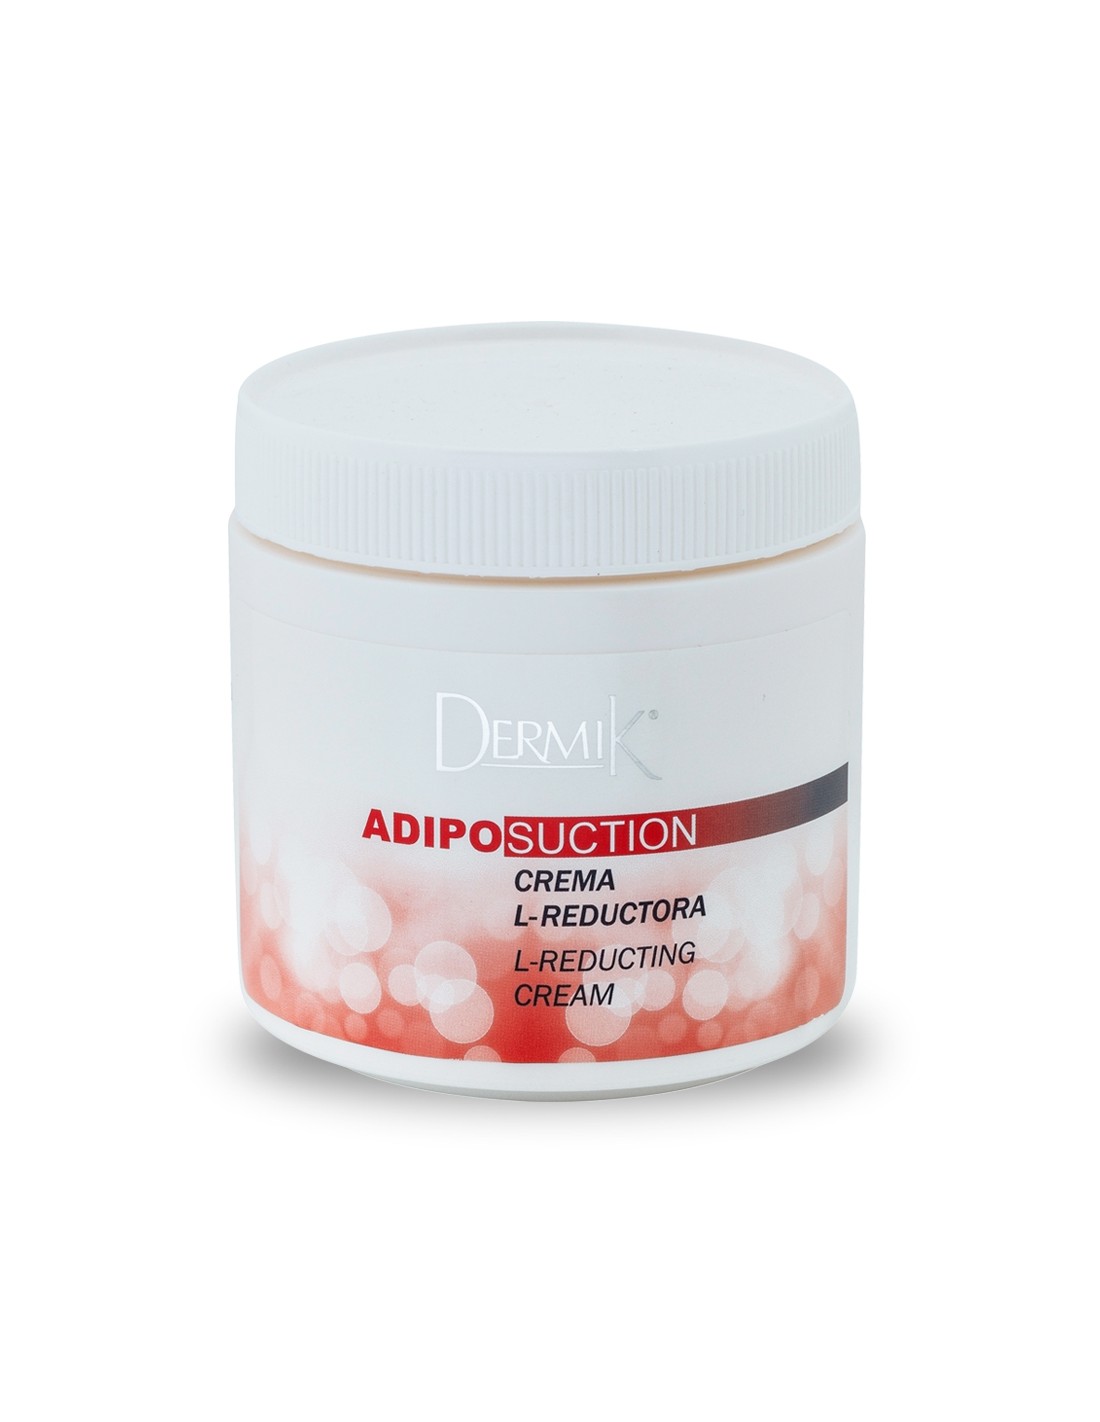 Crema reductora Adipo-suction / Dermik